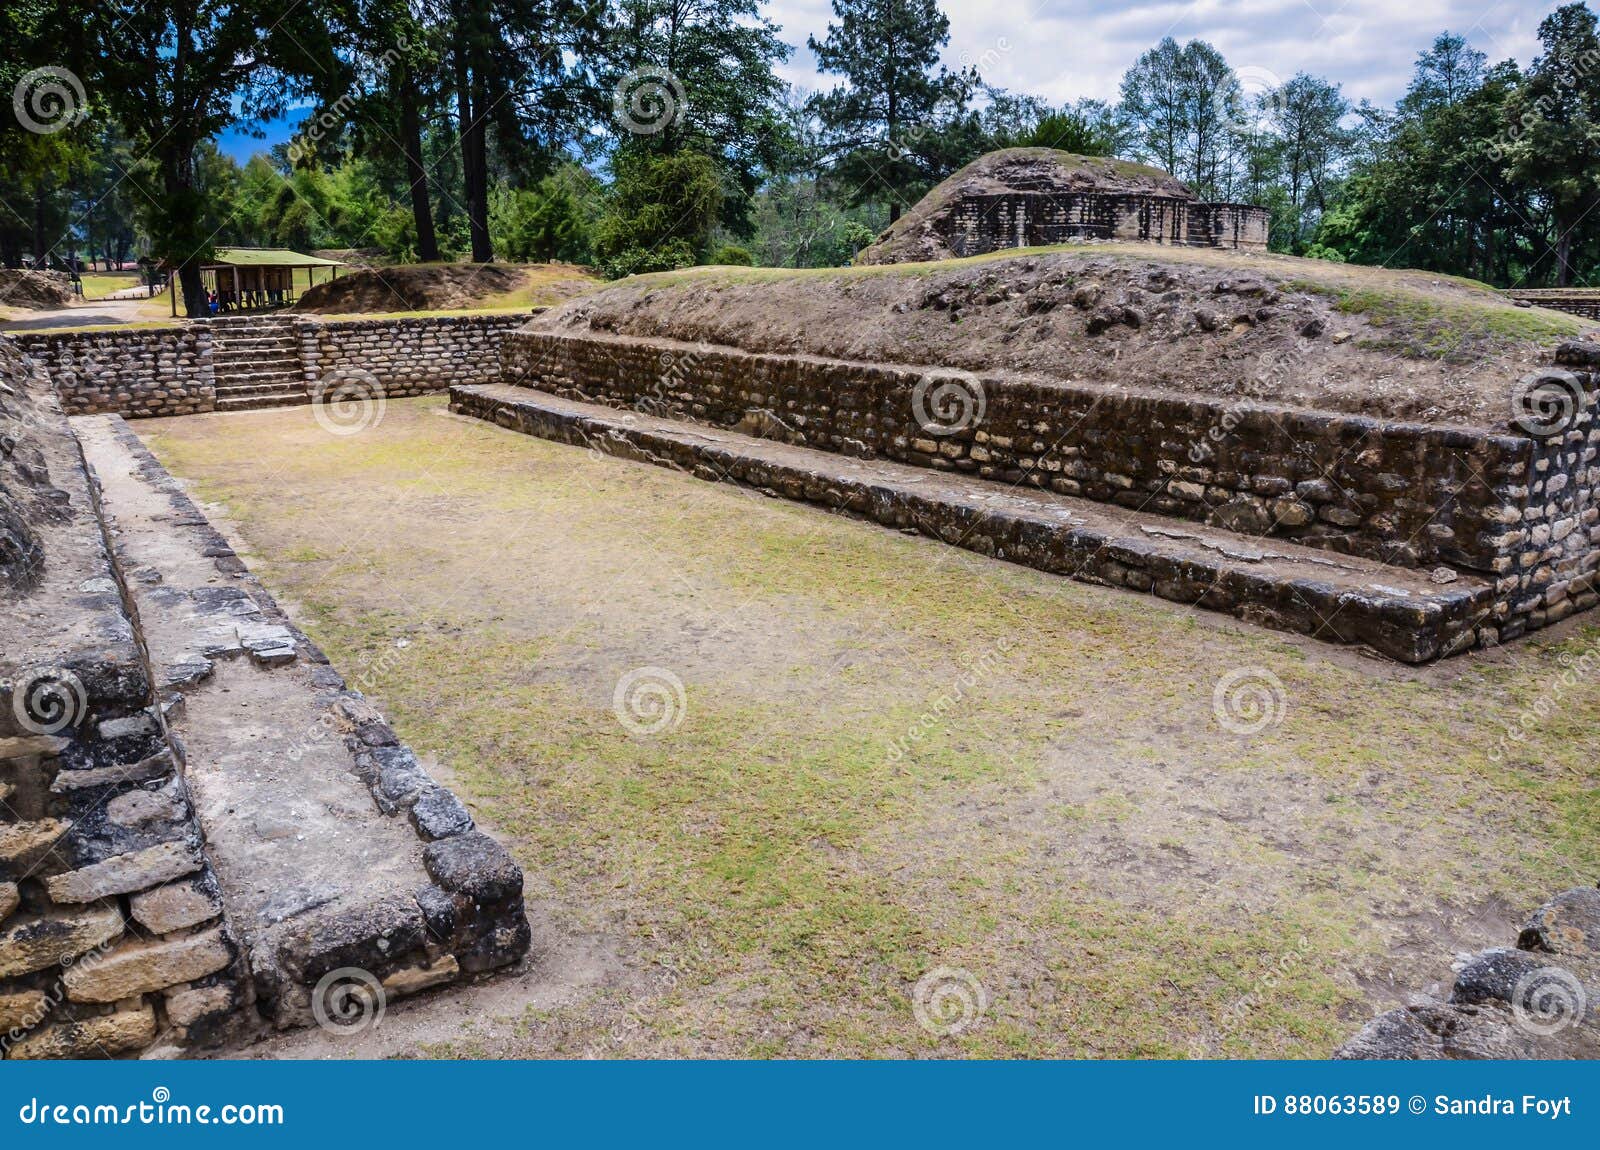 mayan ball court -iximche national monument - guatemala